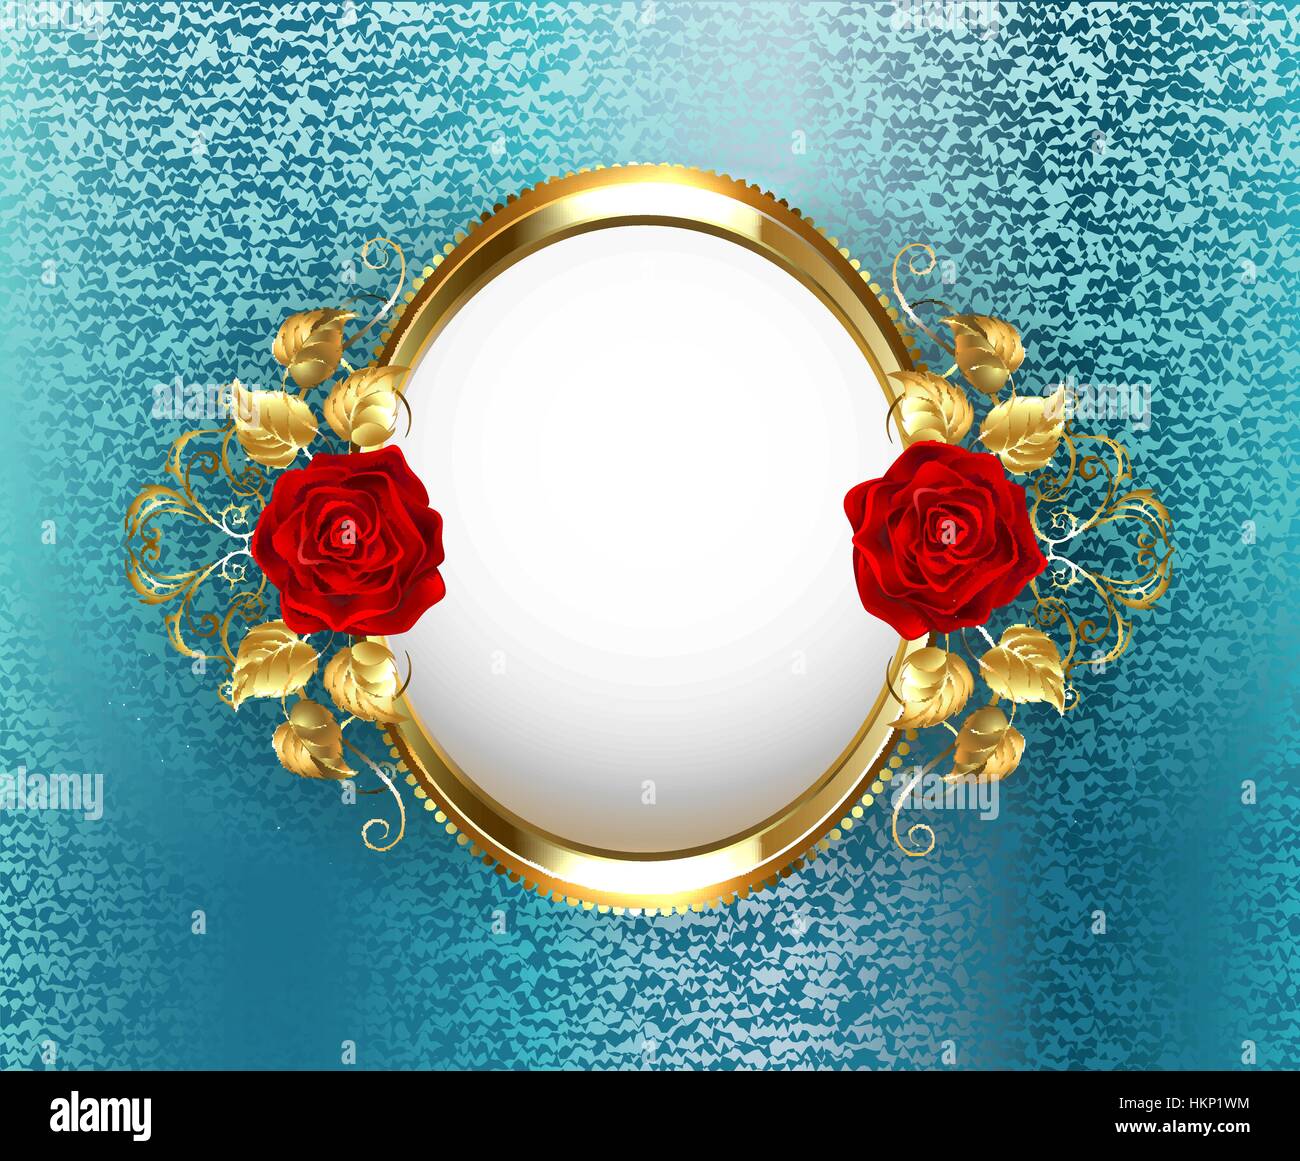 Ovaler Goldrahmen mit roten Rosen auf Türkis, Brokat Hintergrund. Design mit Rosen. Stock Vektor